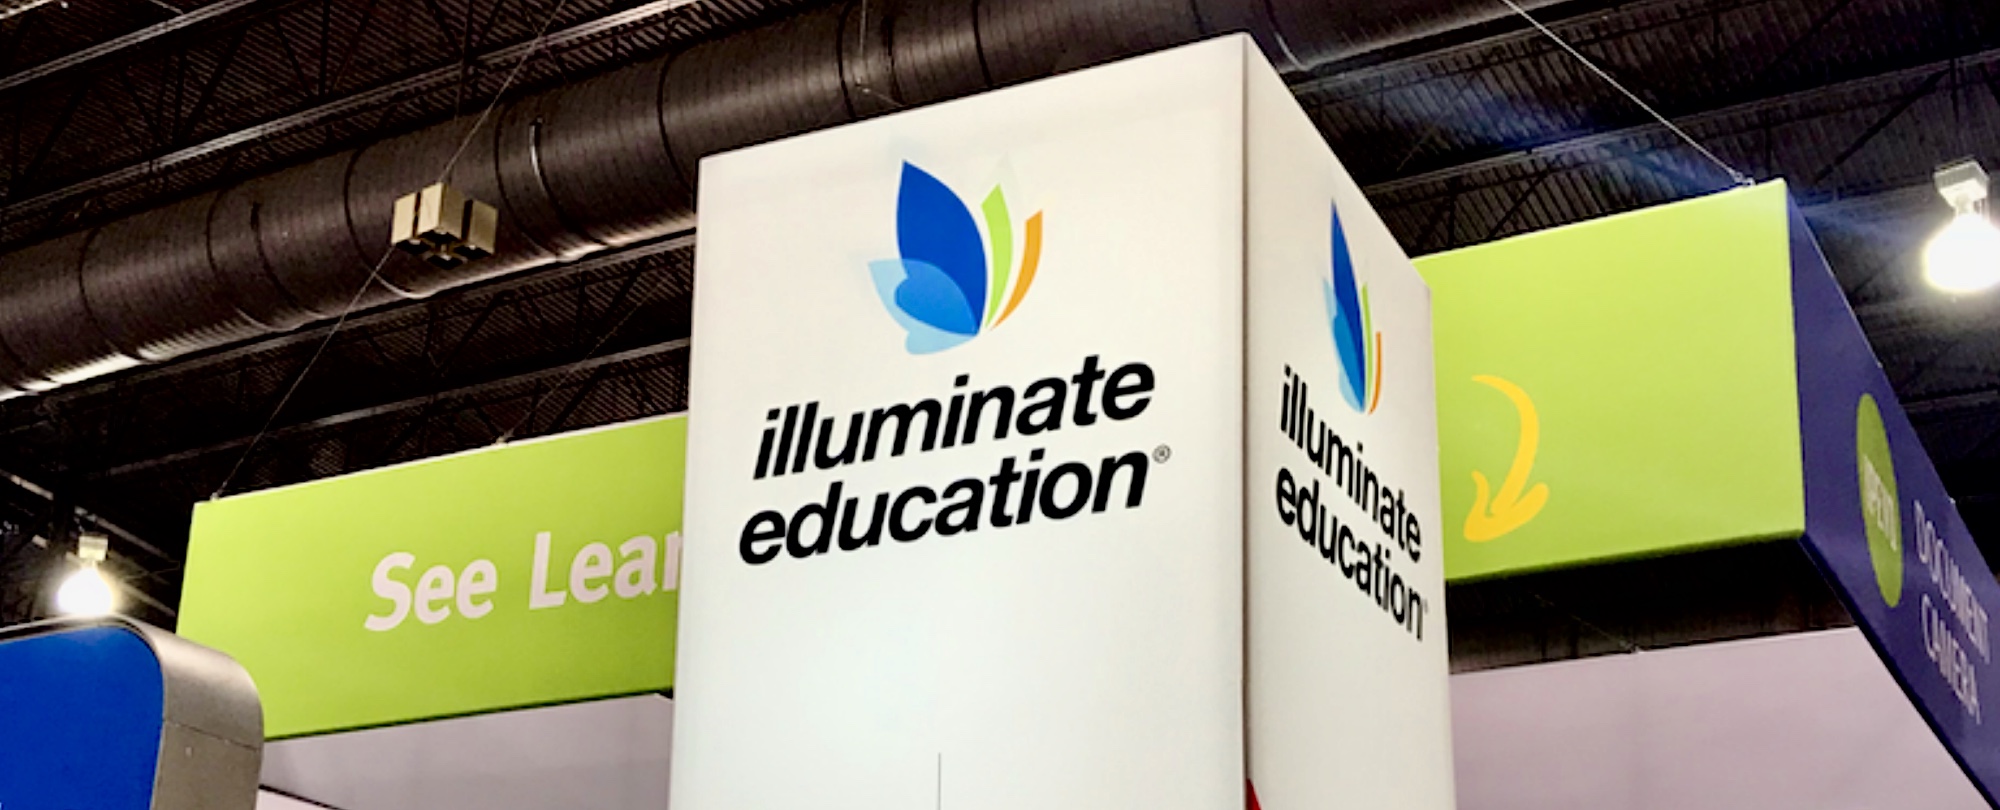 illuminate education mass assignment association